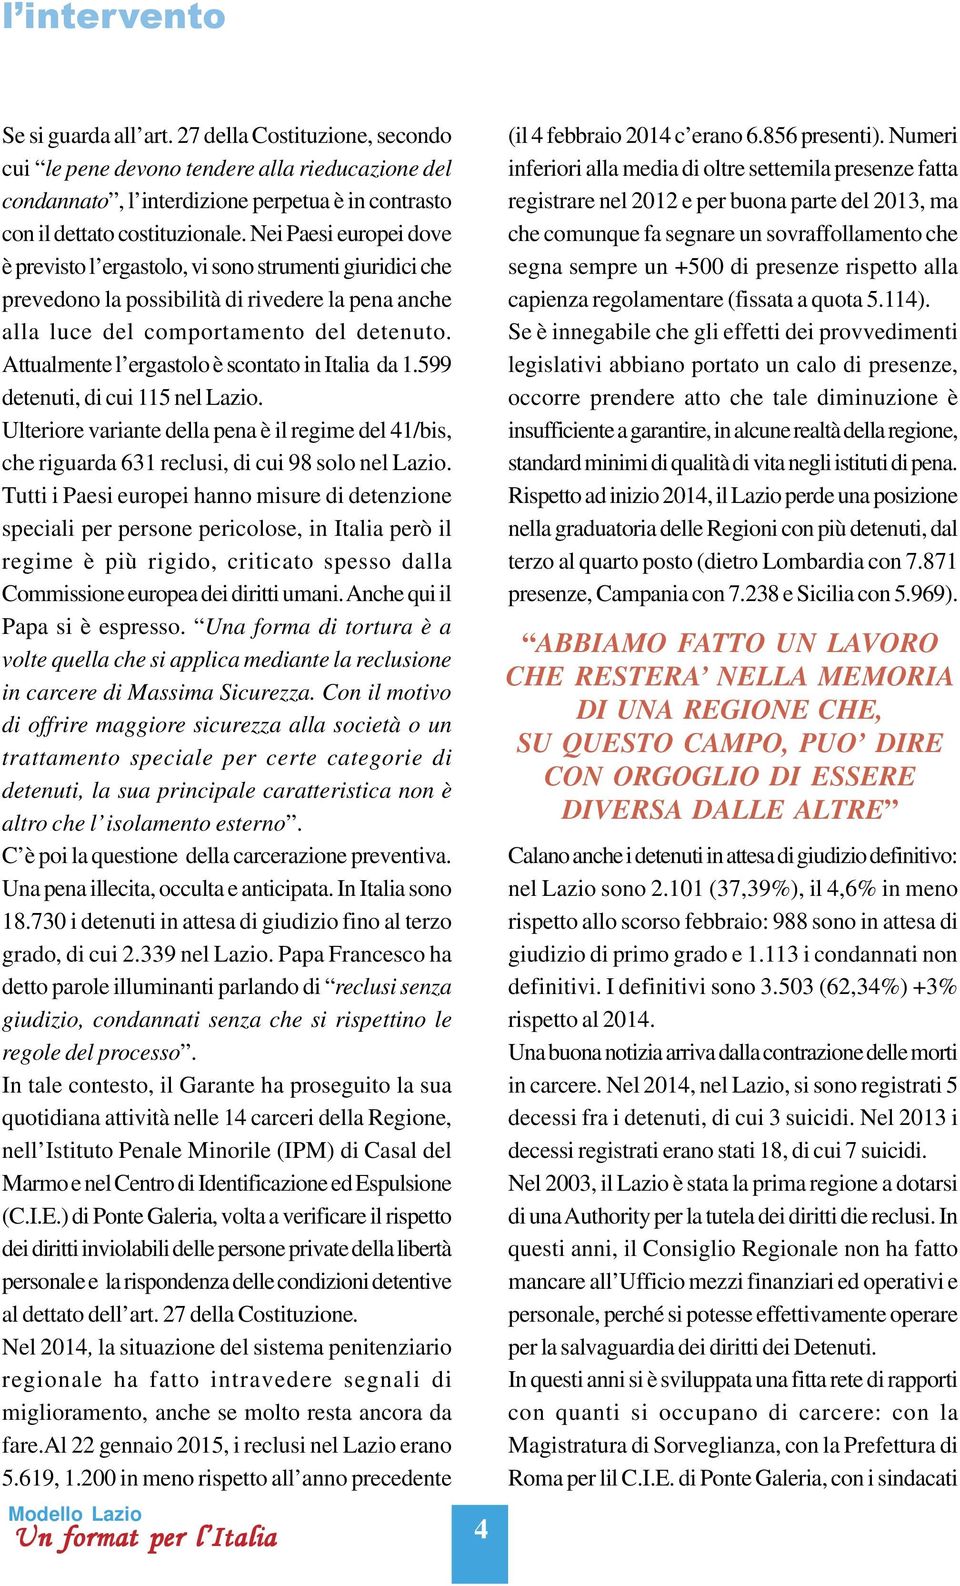 Attualmente l ergastolo è scontato in Italia da 1.599 detenuti, di cui 115 nel Lazio. Ulteriore variante della pena è il regime del 41/bis, che riguarda 631 reclusi, di cui 98 solo nel Lazio.